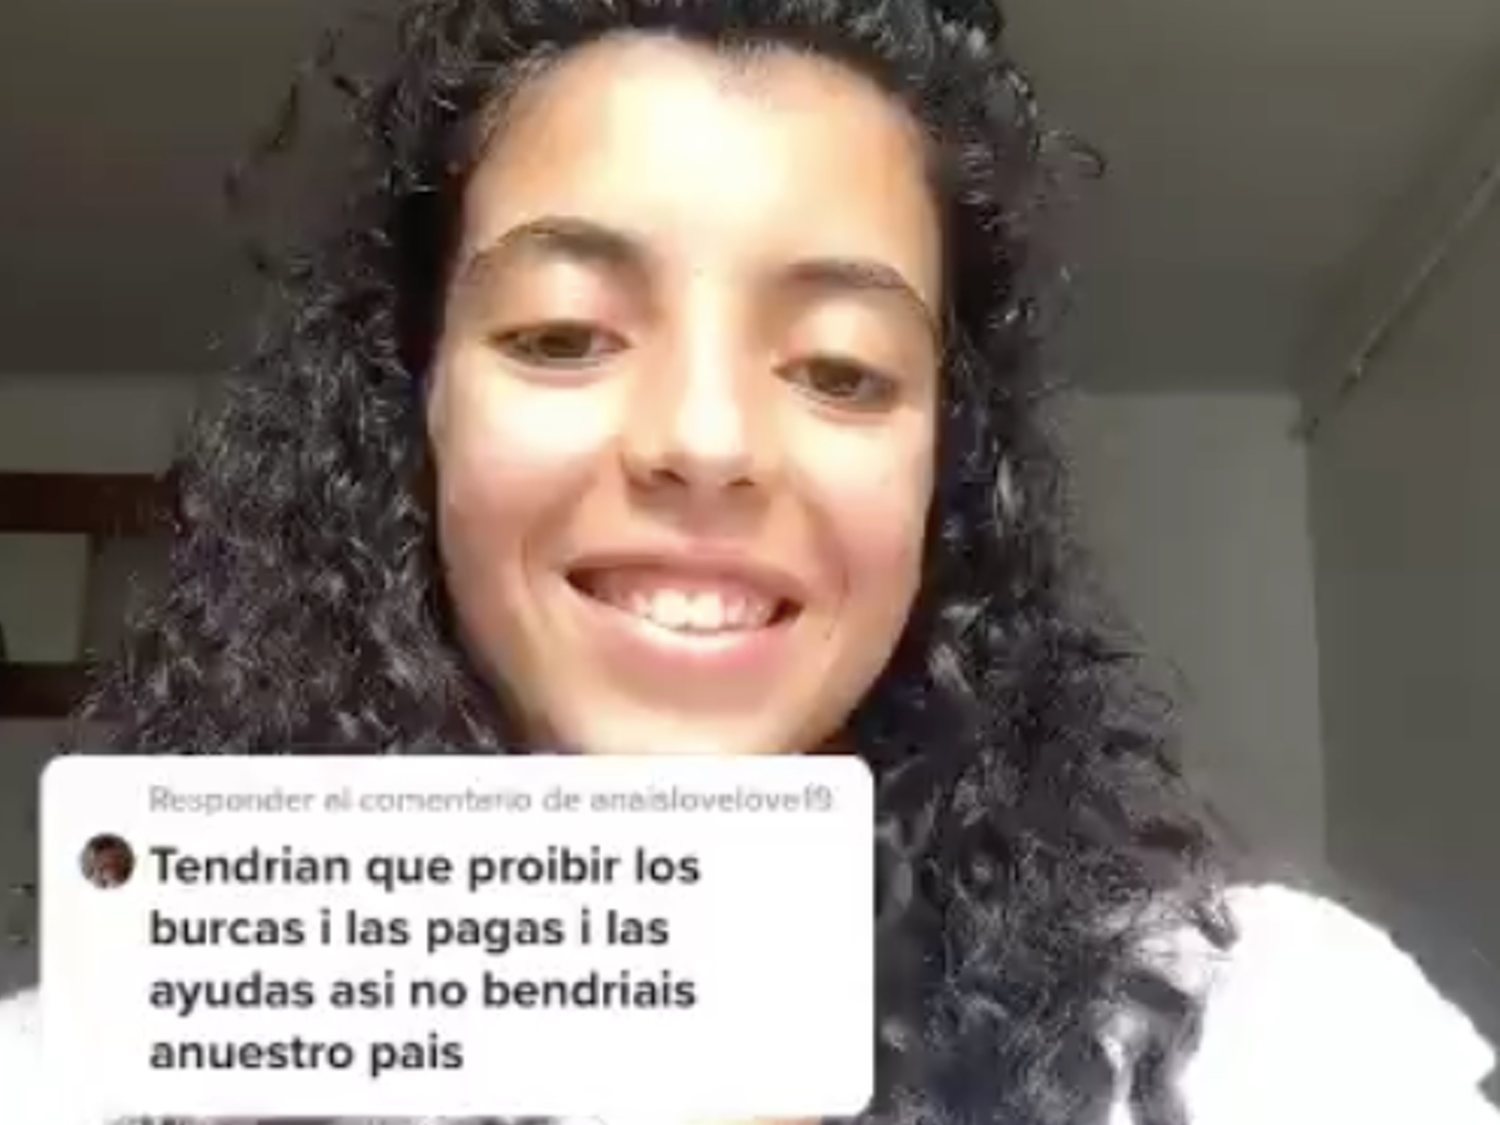 Una joven marroquí se hace viral por responder con humor a los comentarios racistas que recibe